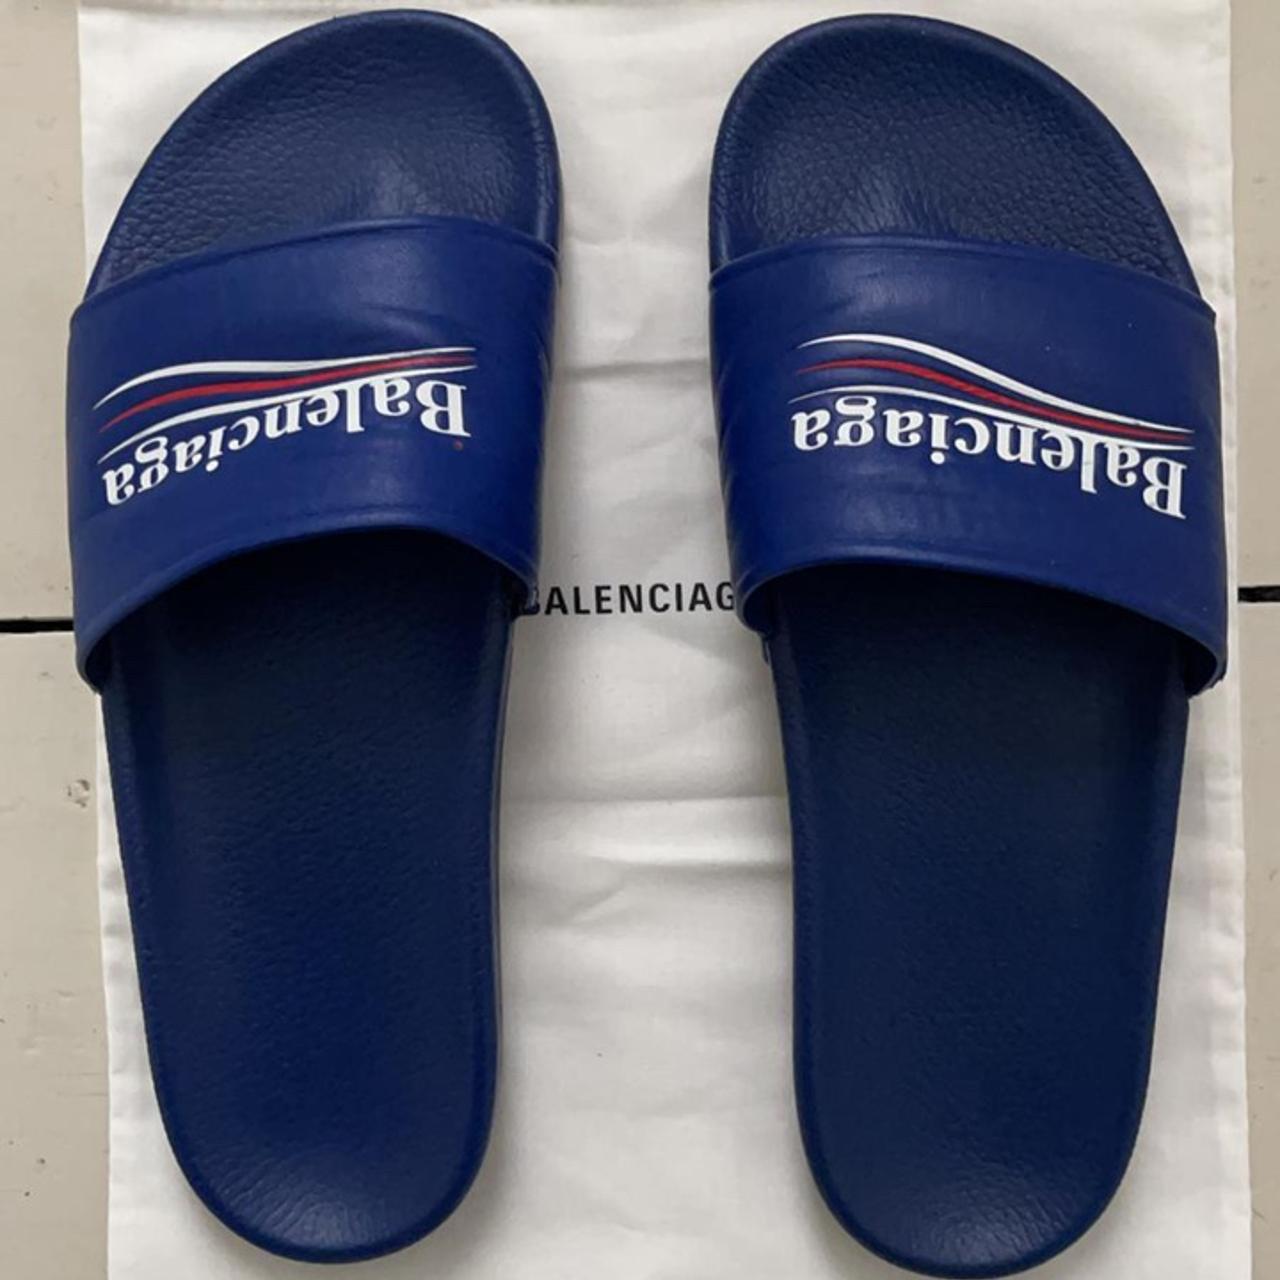 Balenciaga Slides in blue. Great condition - worn... - Depop